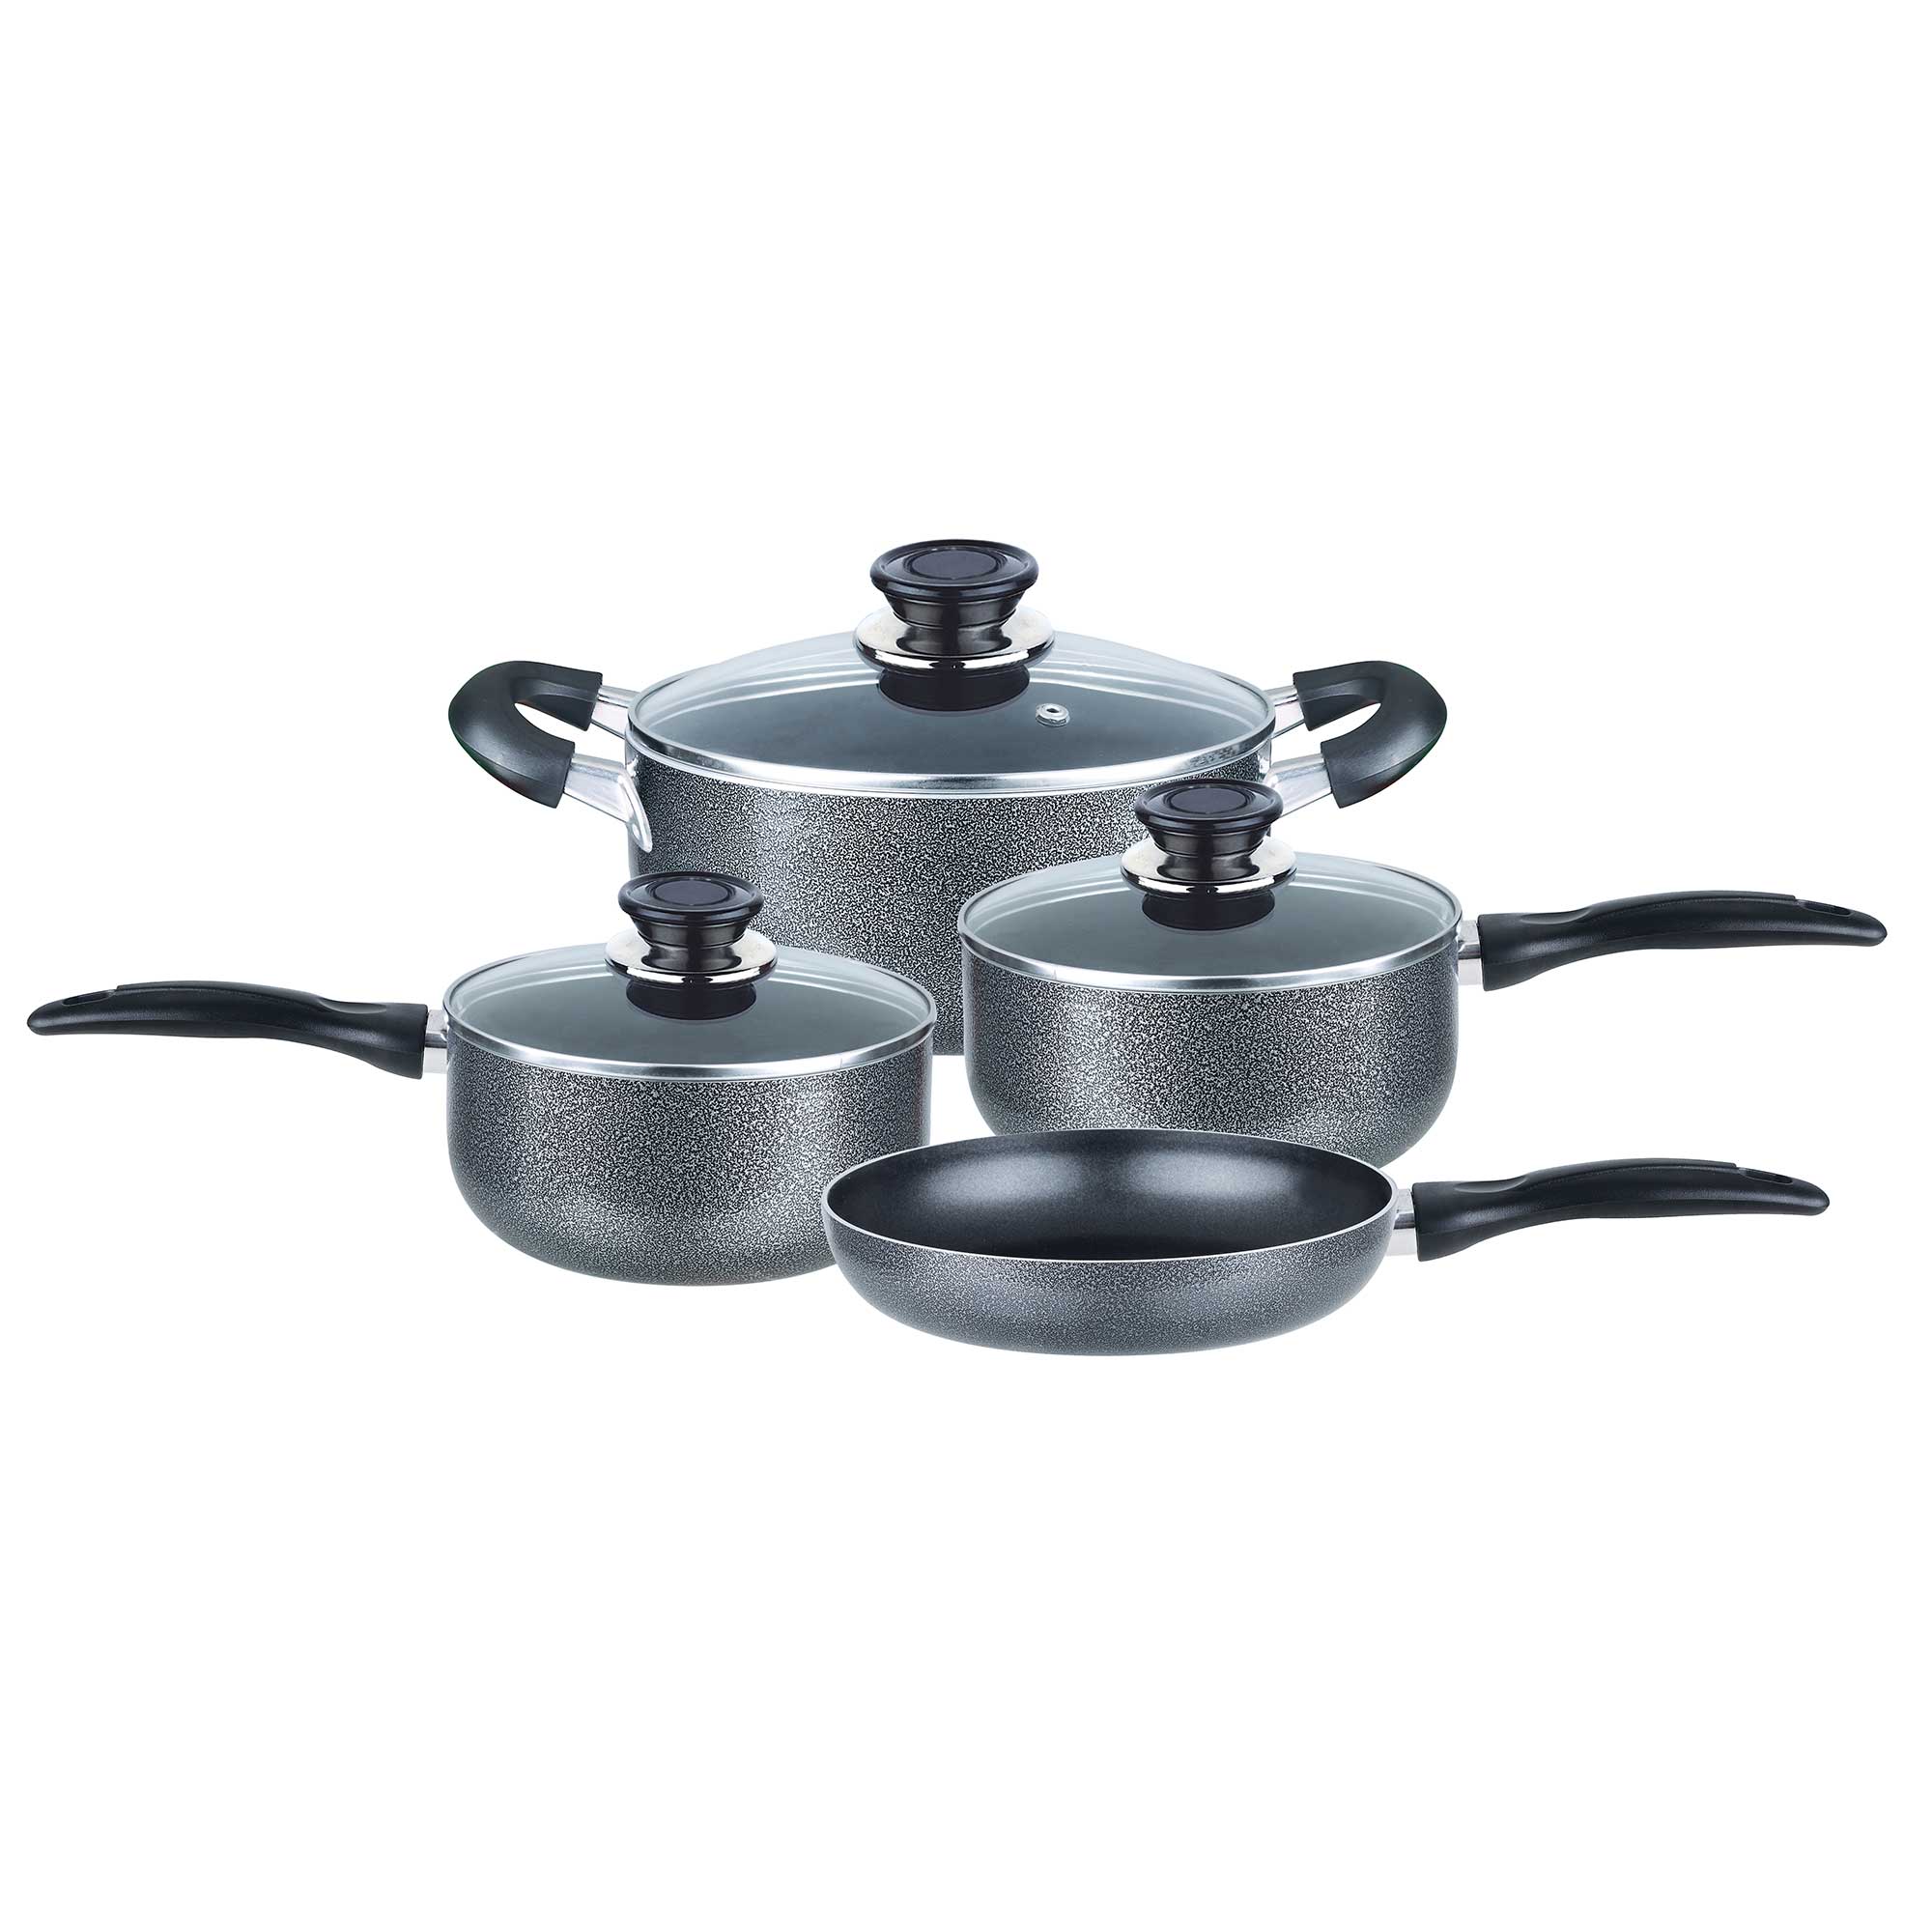 7 Piece Aluminum Non-Stick Dishwasher Safe Cookware Set, Pots and Pans, Black